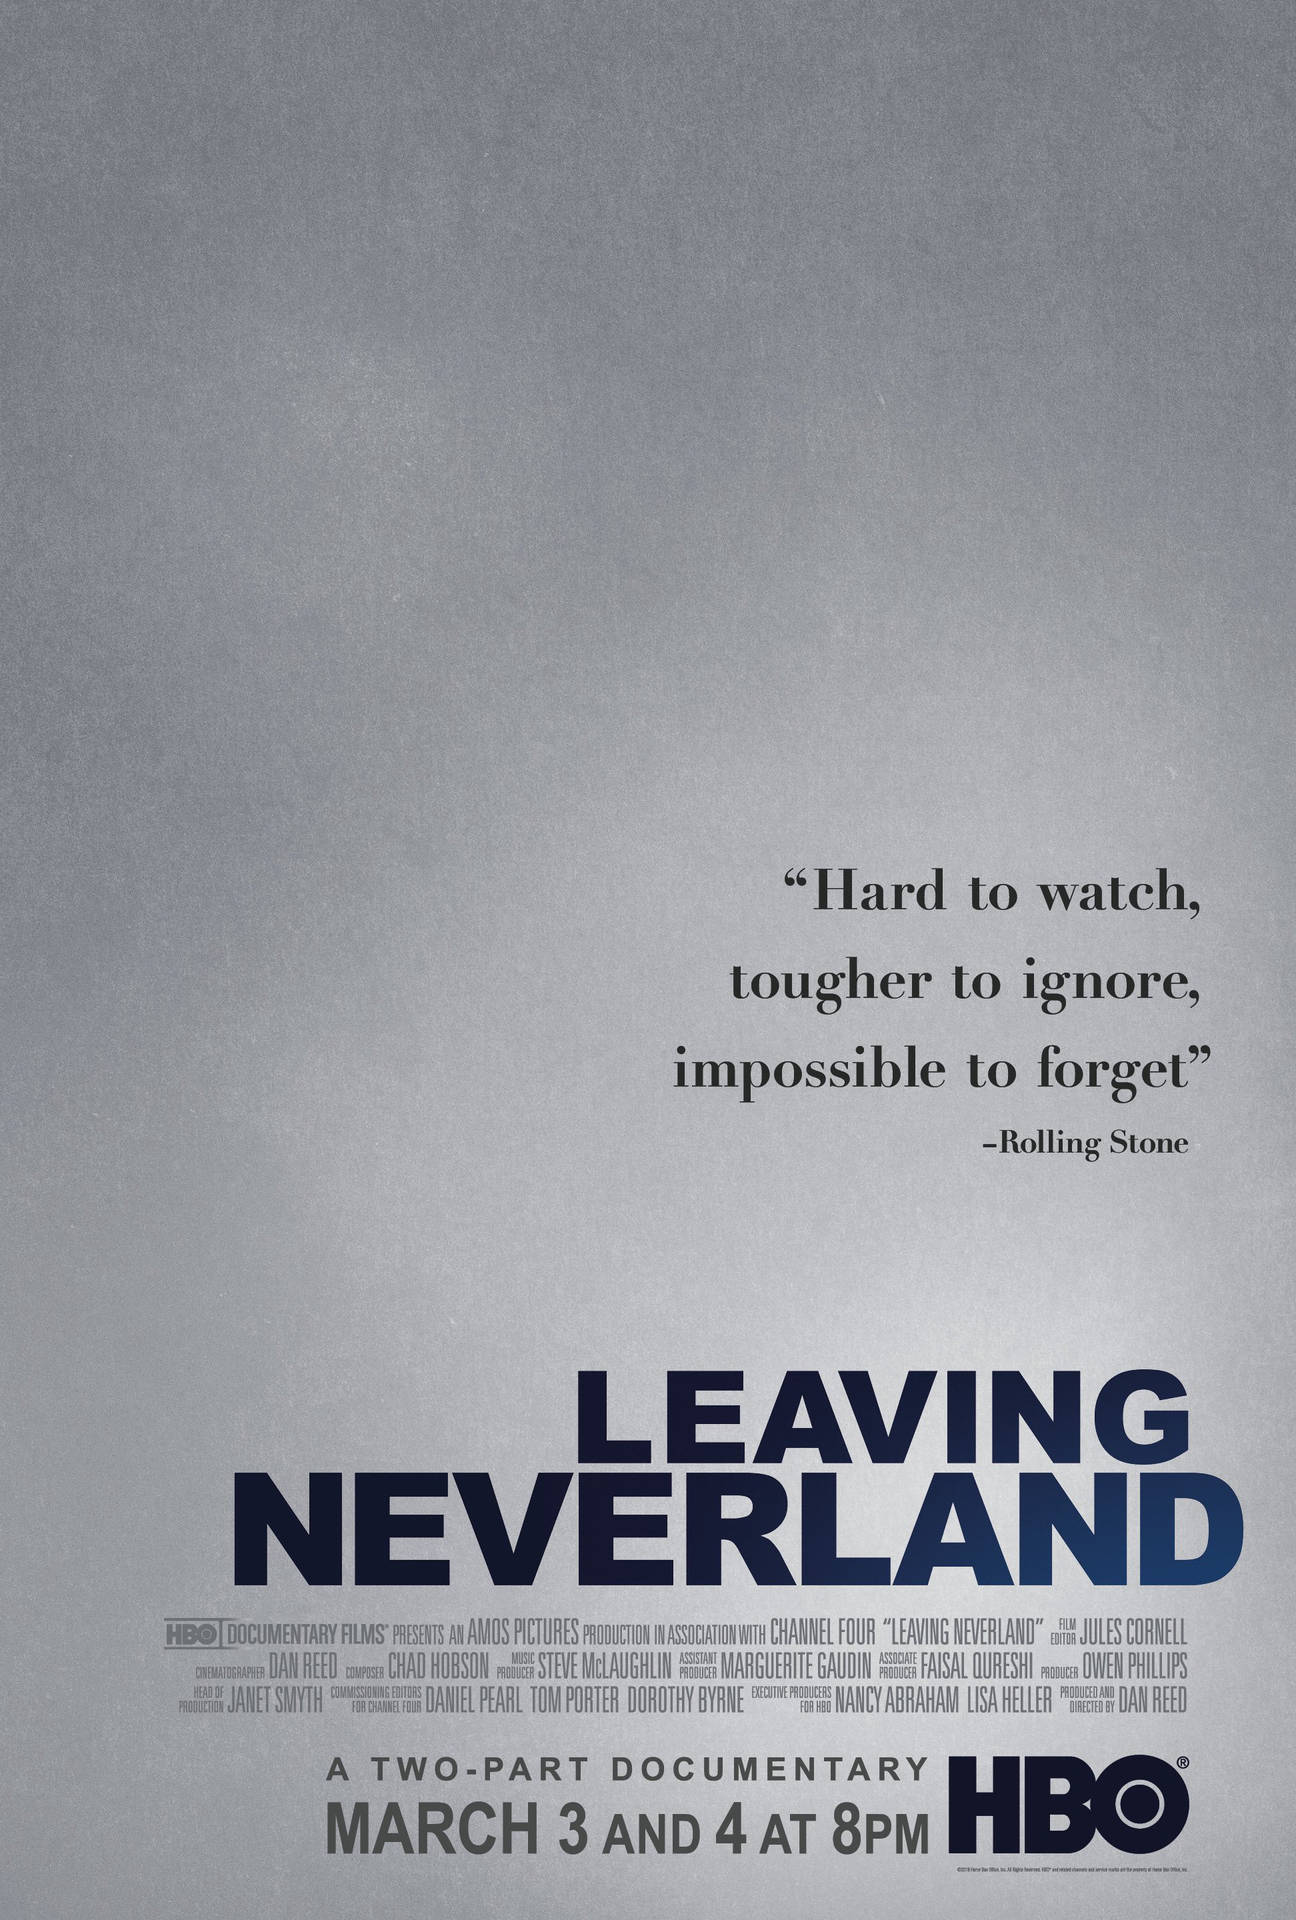 HBO Leaving Neverland